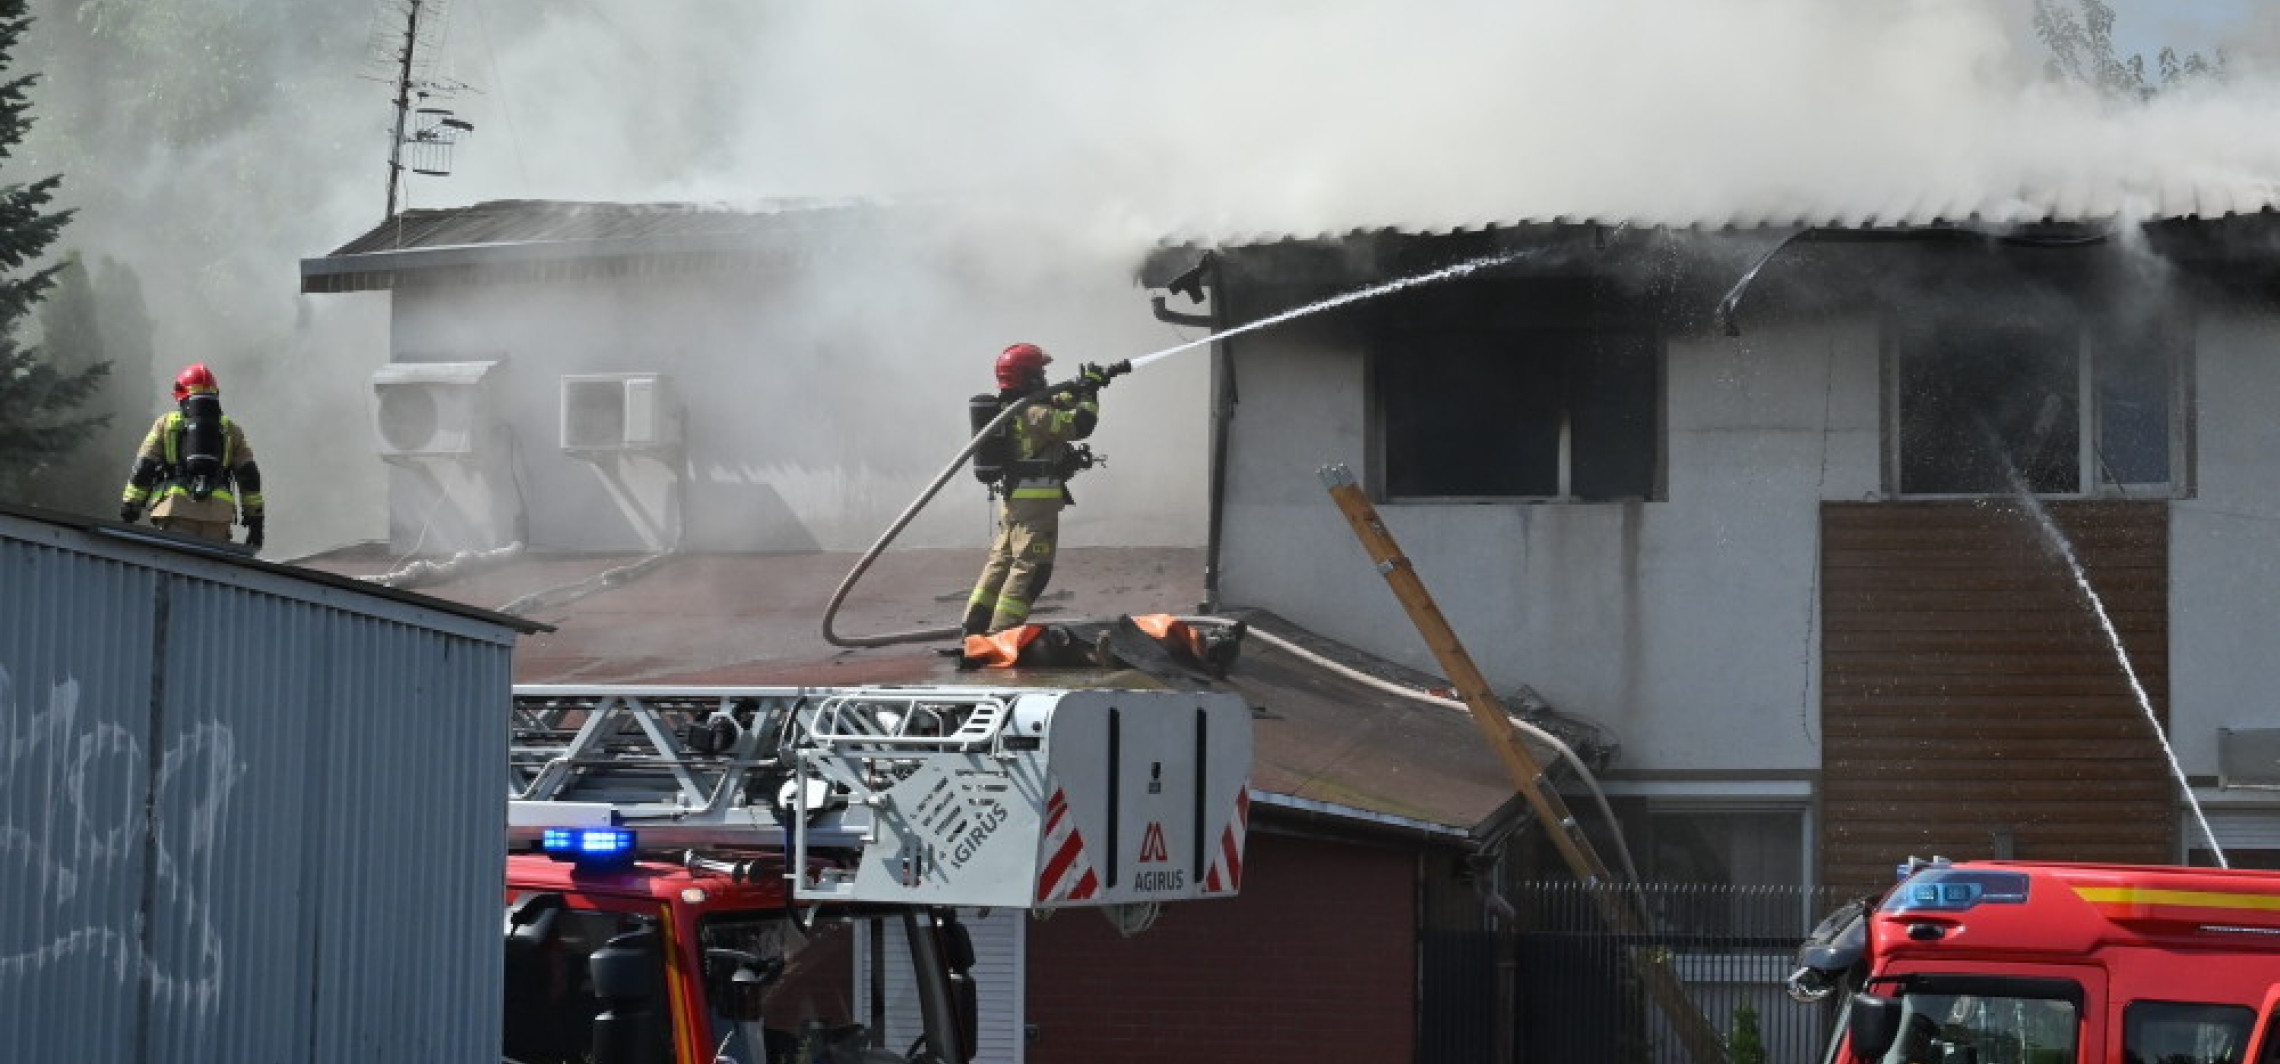 Region - Bydgoszcz: w pożarze zginęły trzy osoby, 11 poszkodowanych